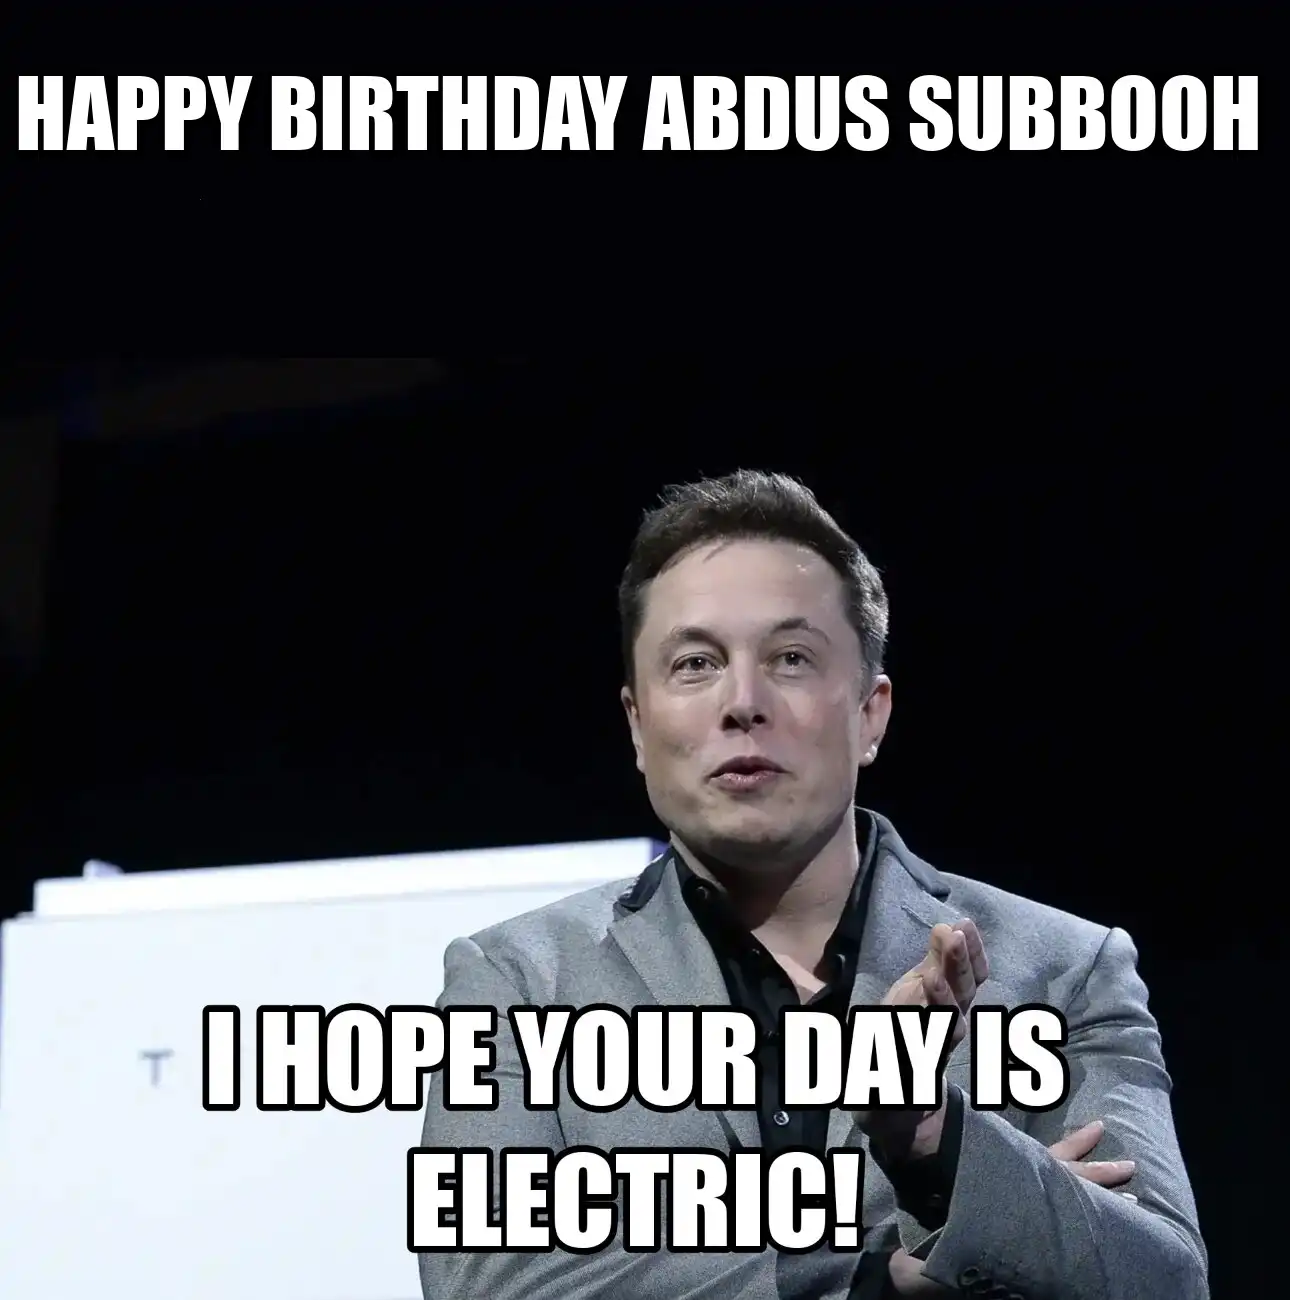 Happy Birthday Abdus Subbooh I Hope Your Day Is Electric Meme